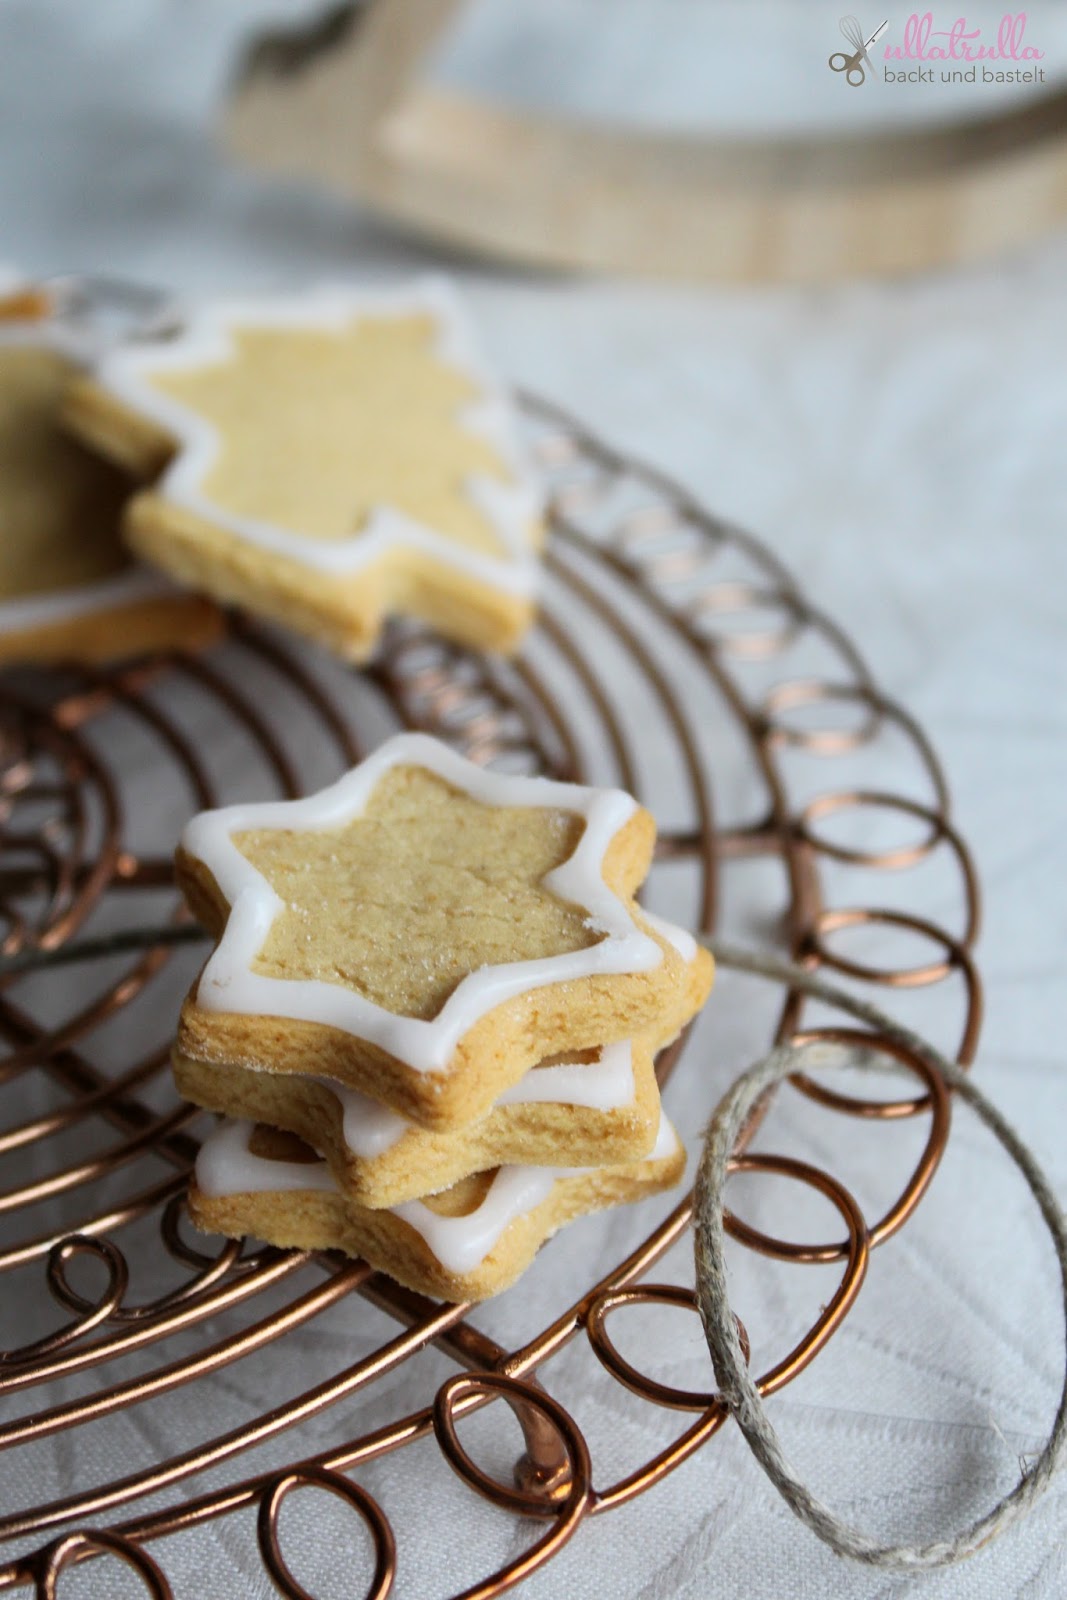 ullatrulla backt und bastelt: Weihnachtsbäckerei | Honigplätzchen